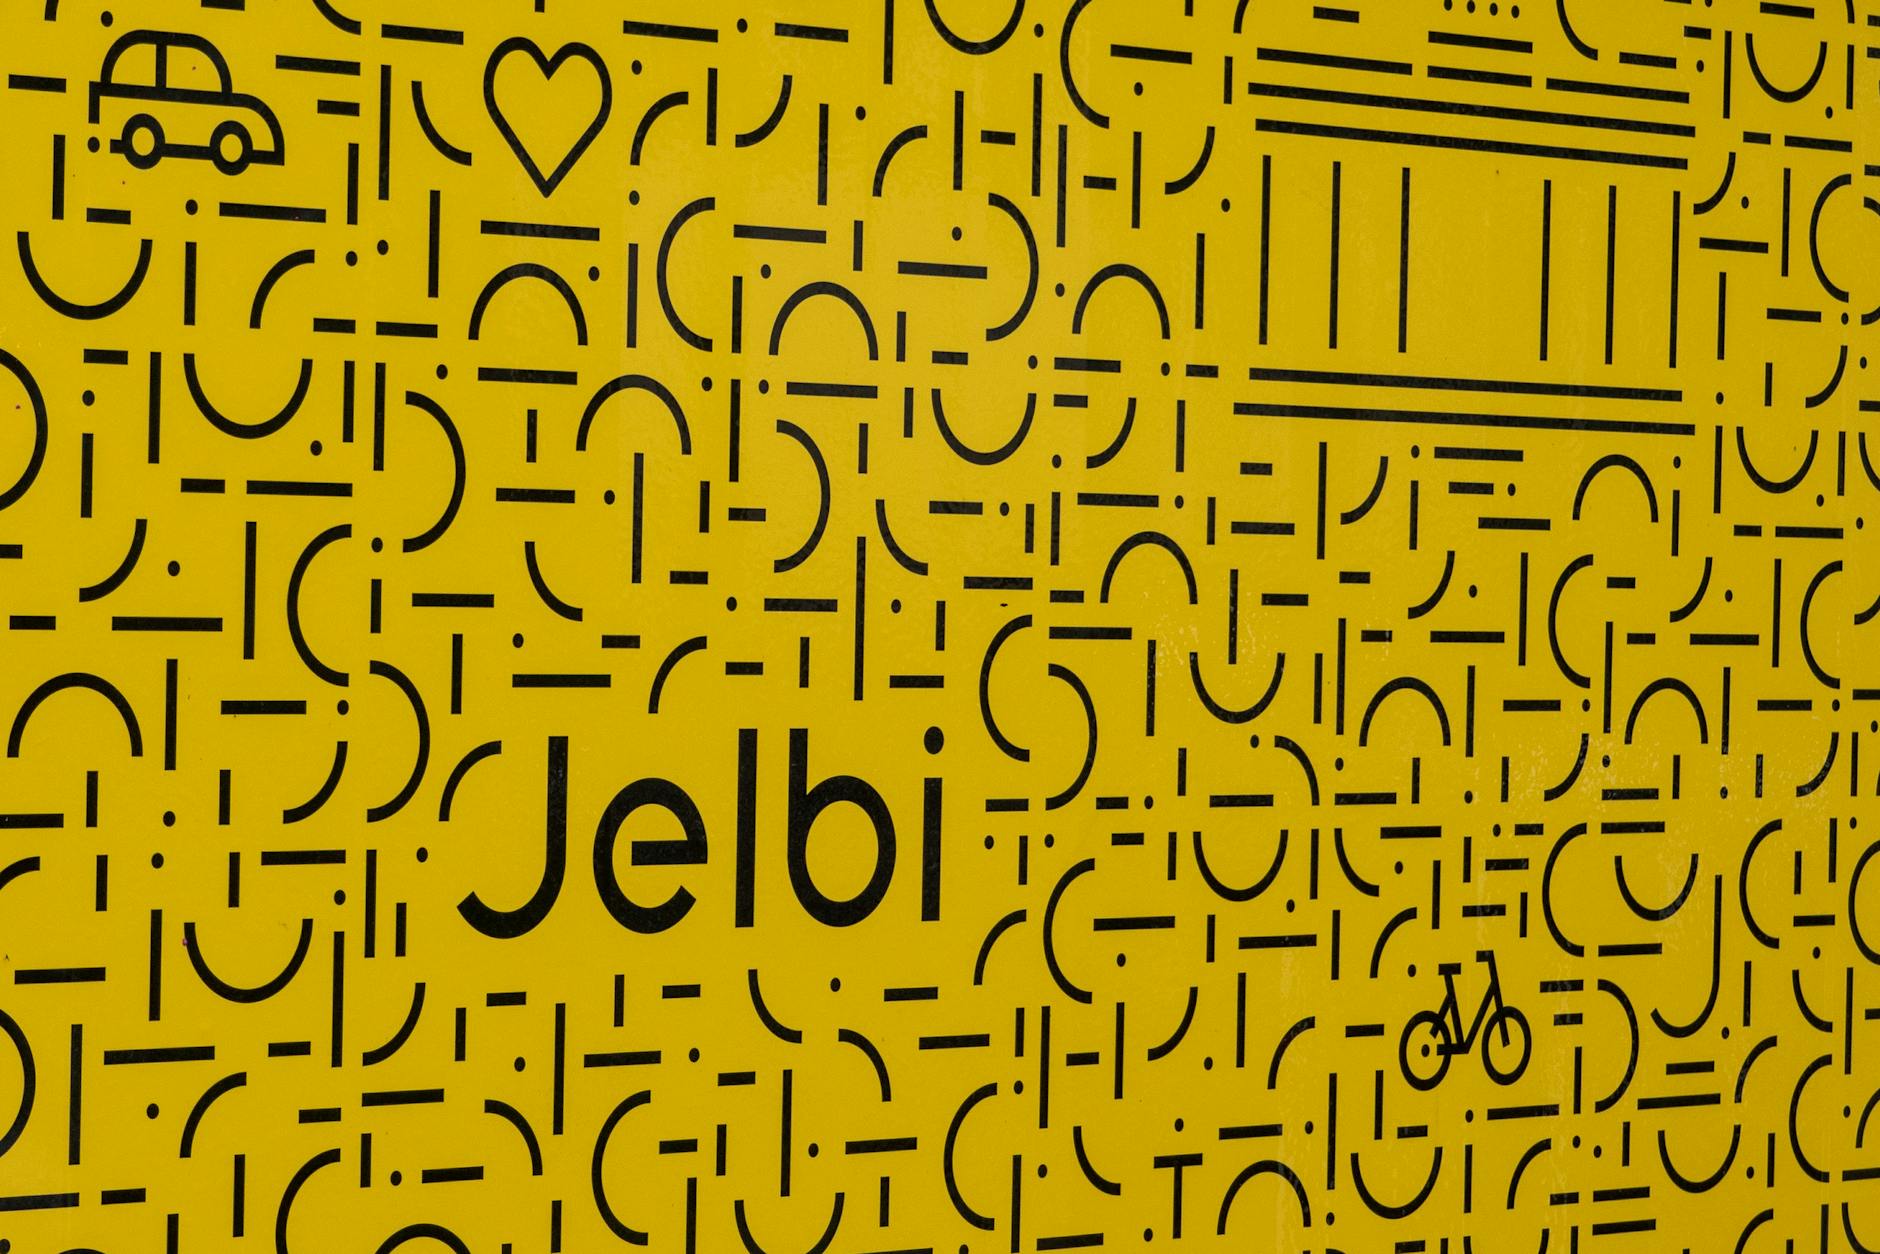 Jelbi – die Mobilitäts-App der BVG: Warum so hässlich?